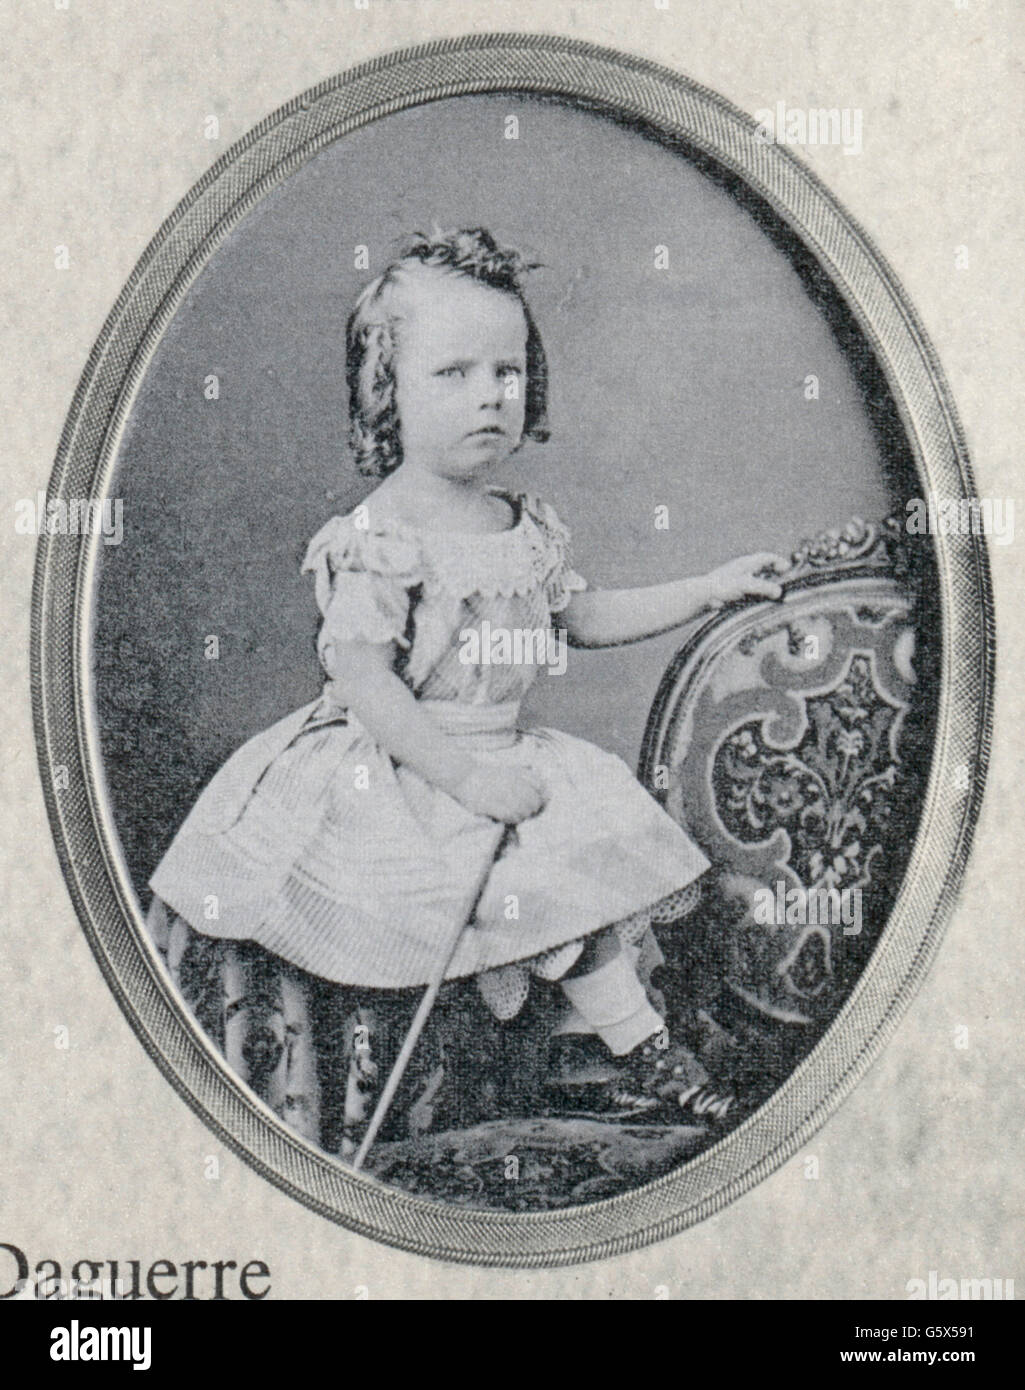 Fotografie, Daguerreotypie, junges Mädchen, von Jeremiah Gurney (1812 - 1895), USA, 1850 - 1860, zusätzliche-Rechte-Clearenzen-nicht verfügbar Stockfoto